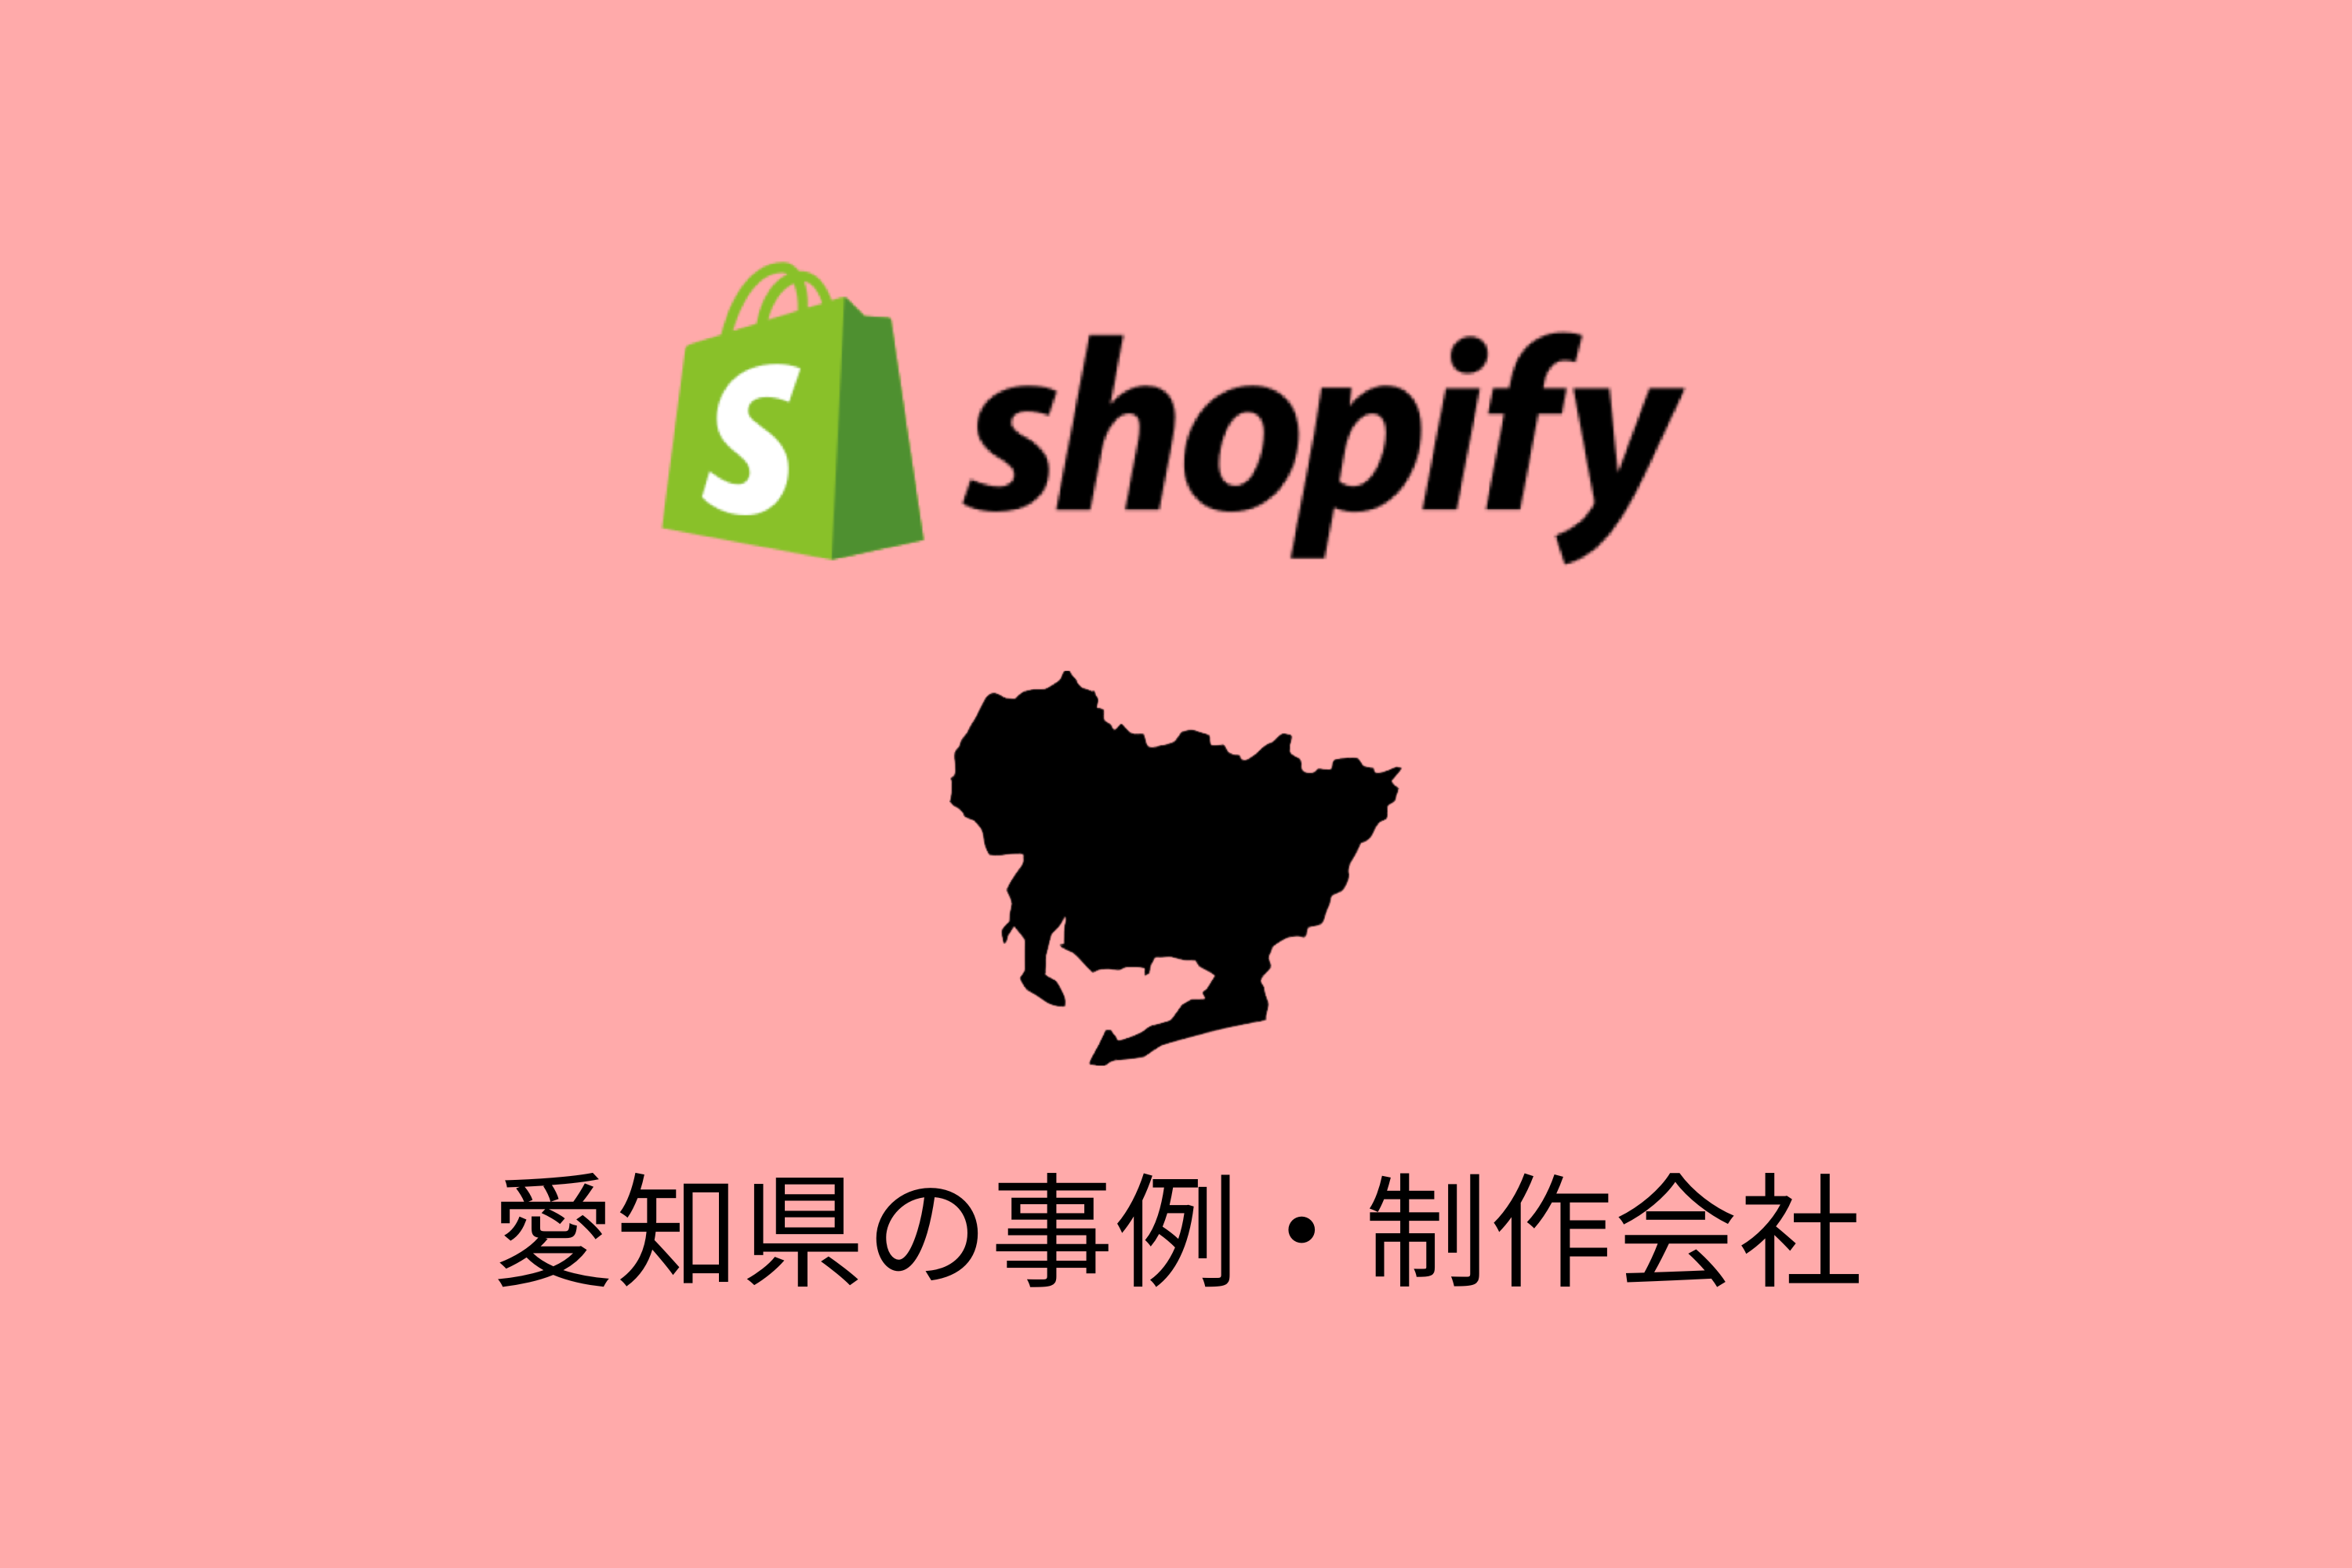 愛知県のShopify制作会社として、イーダが掲載されました。